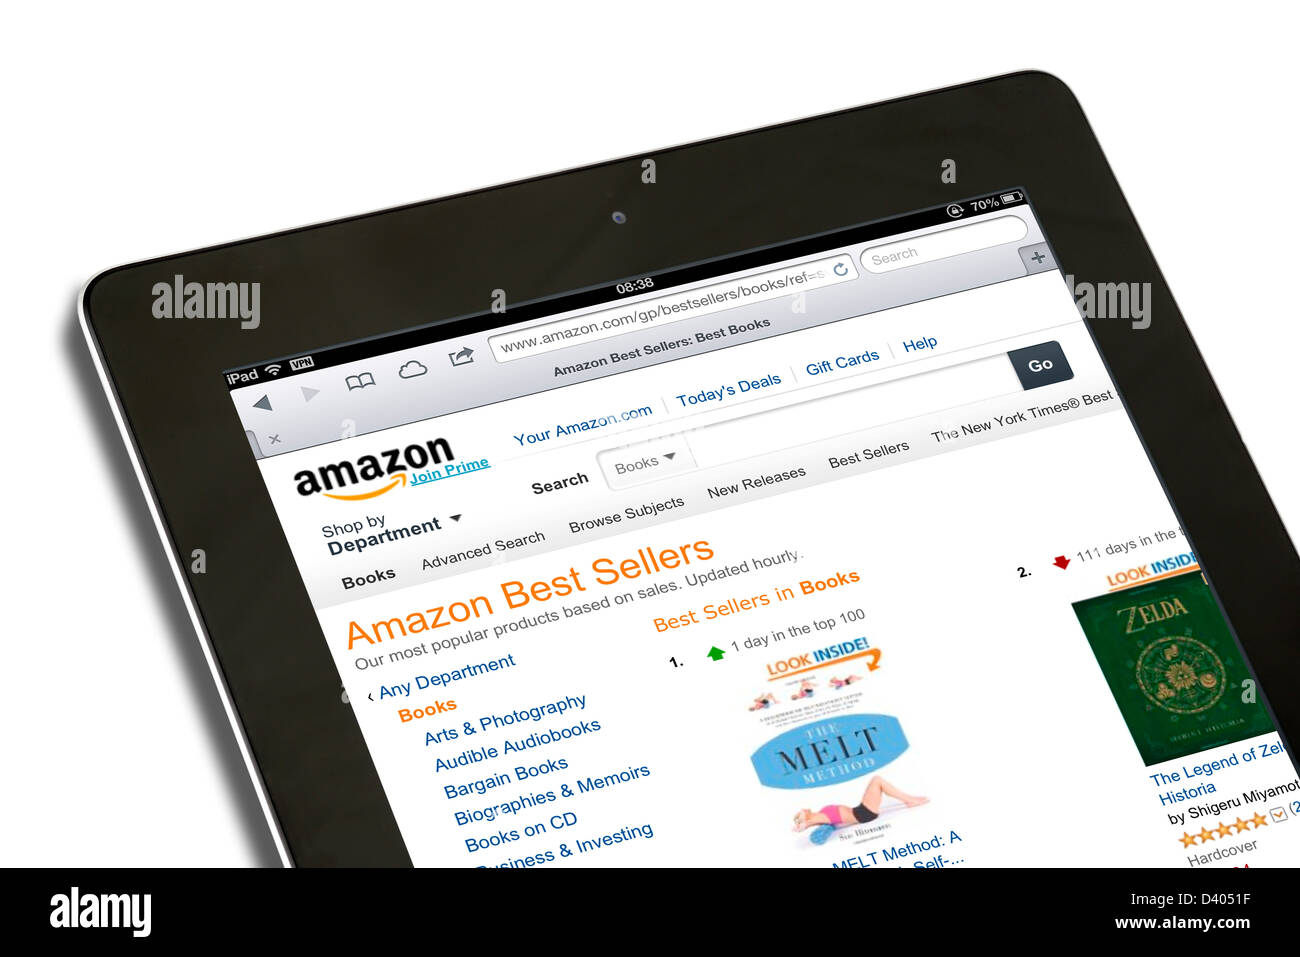 Shopping pour les livres sur l'amazon.com USA Site web sur une 4ème génération d'Apple iPad tablet computer Banque D'Images